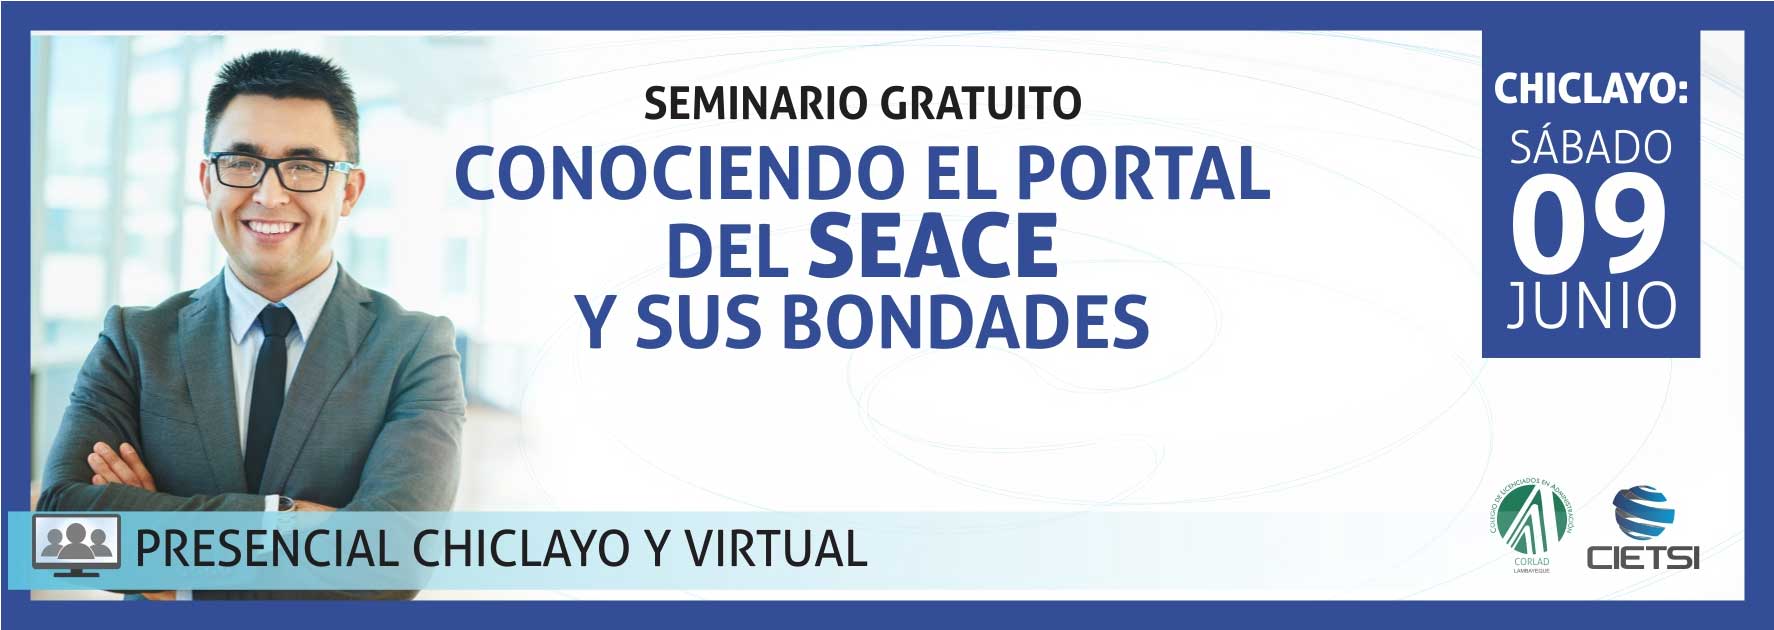 seminario gratuito conociendo el portal del seace y sus bondades 2018